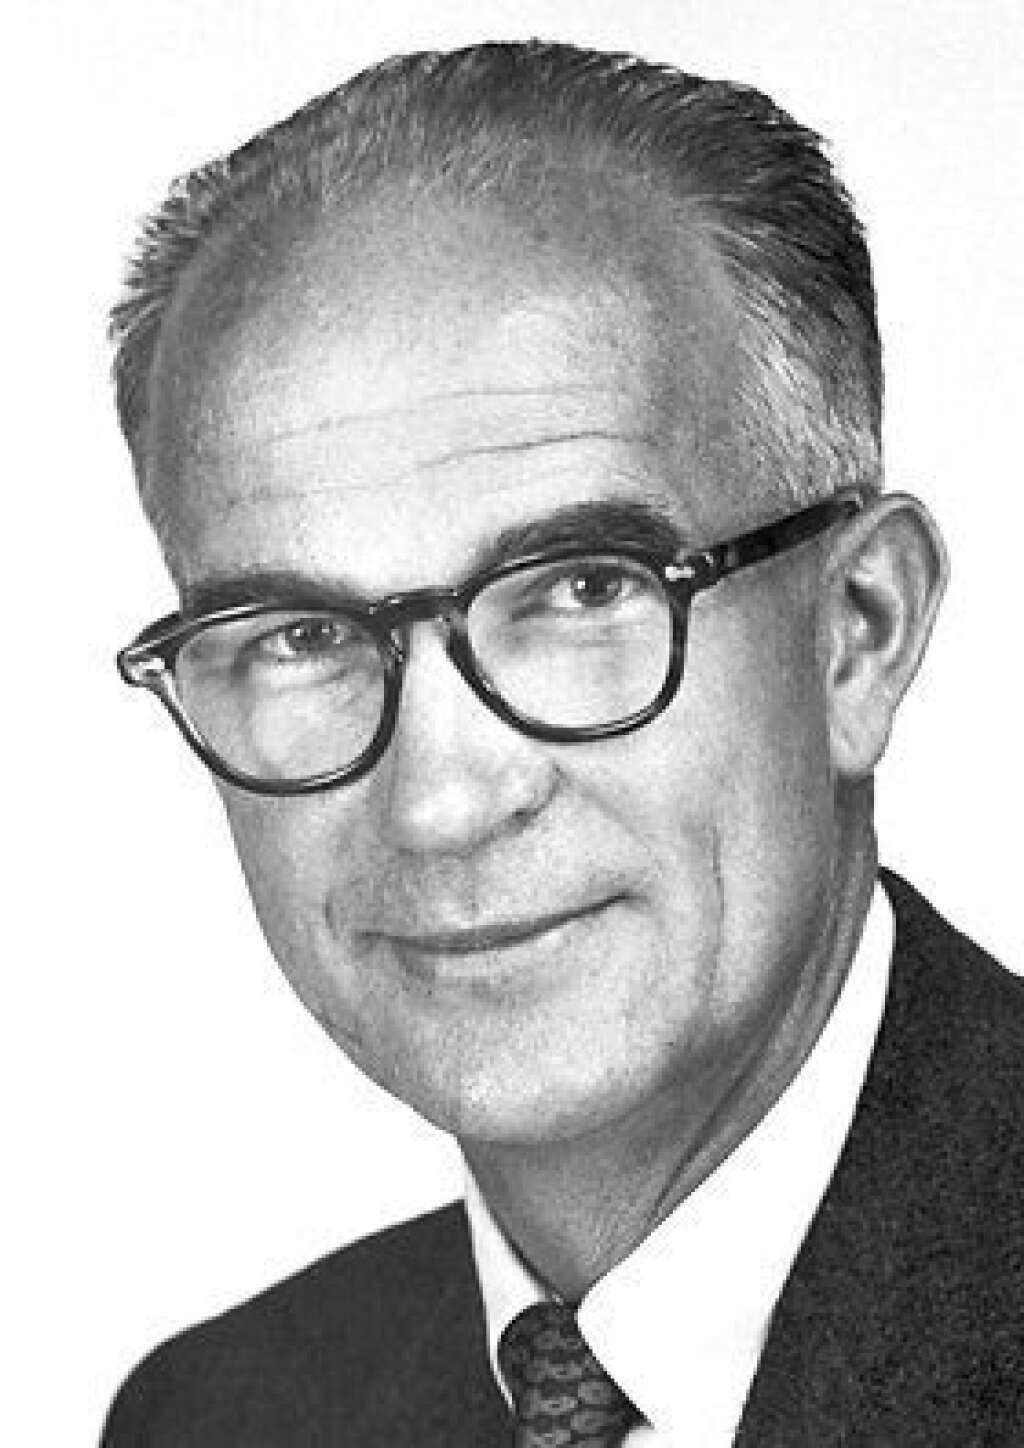 1956 : William Shockley, John Bardeen et Walter Brattain - En 1956, ces trois chercheurs américains sont récompensés "pour leurs recherches sur les semi-conducteurs et leur découverte de l'effet transistor." Semi-conducteurs, transistor, ça vous dit quelque chose?   Photo : William Shockley